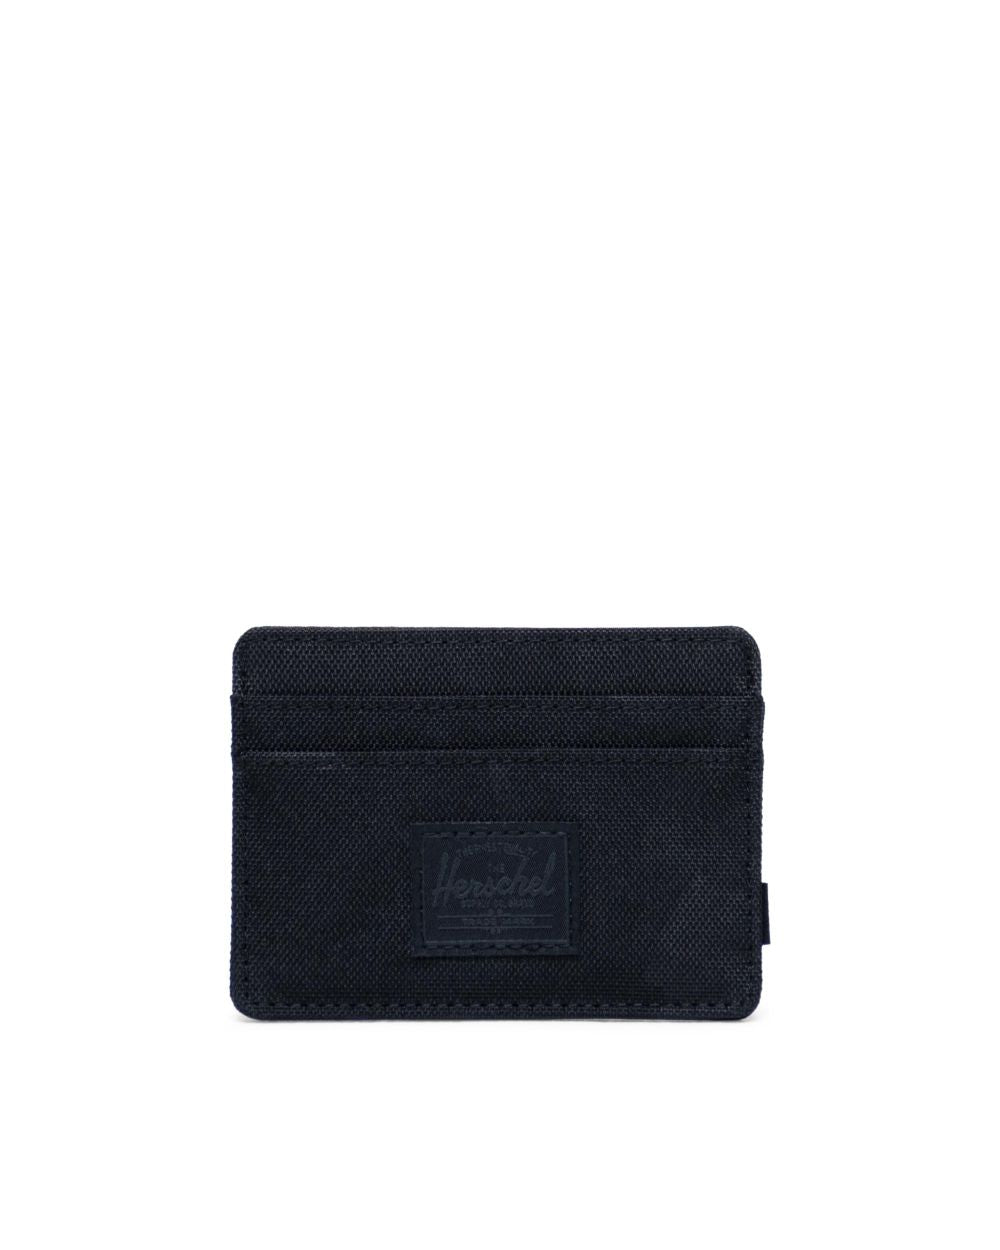 Herschel Supply Co - Charlie+ Wallet, Black Tonal Camo